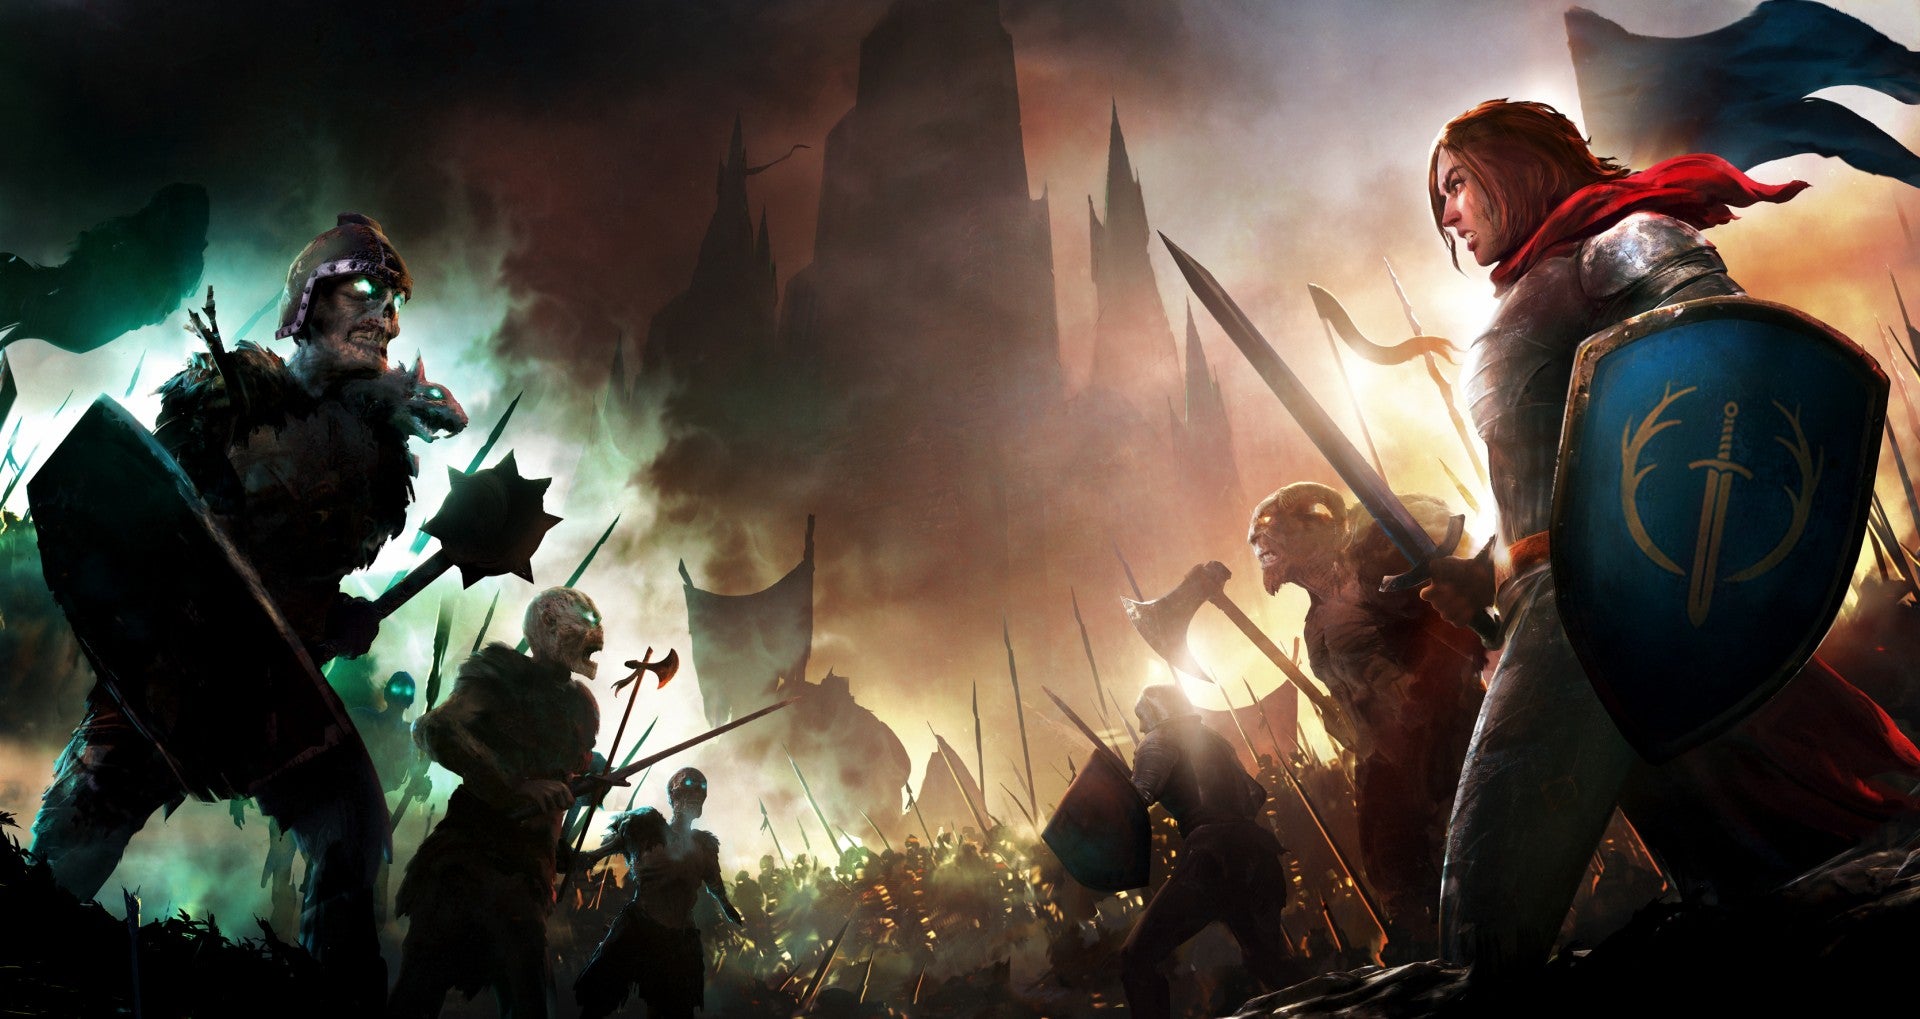 Bilder zu Songs of Conquest ist eines der gemütlichsten und schönsten PC-Spiele des Jahres